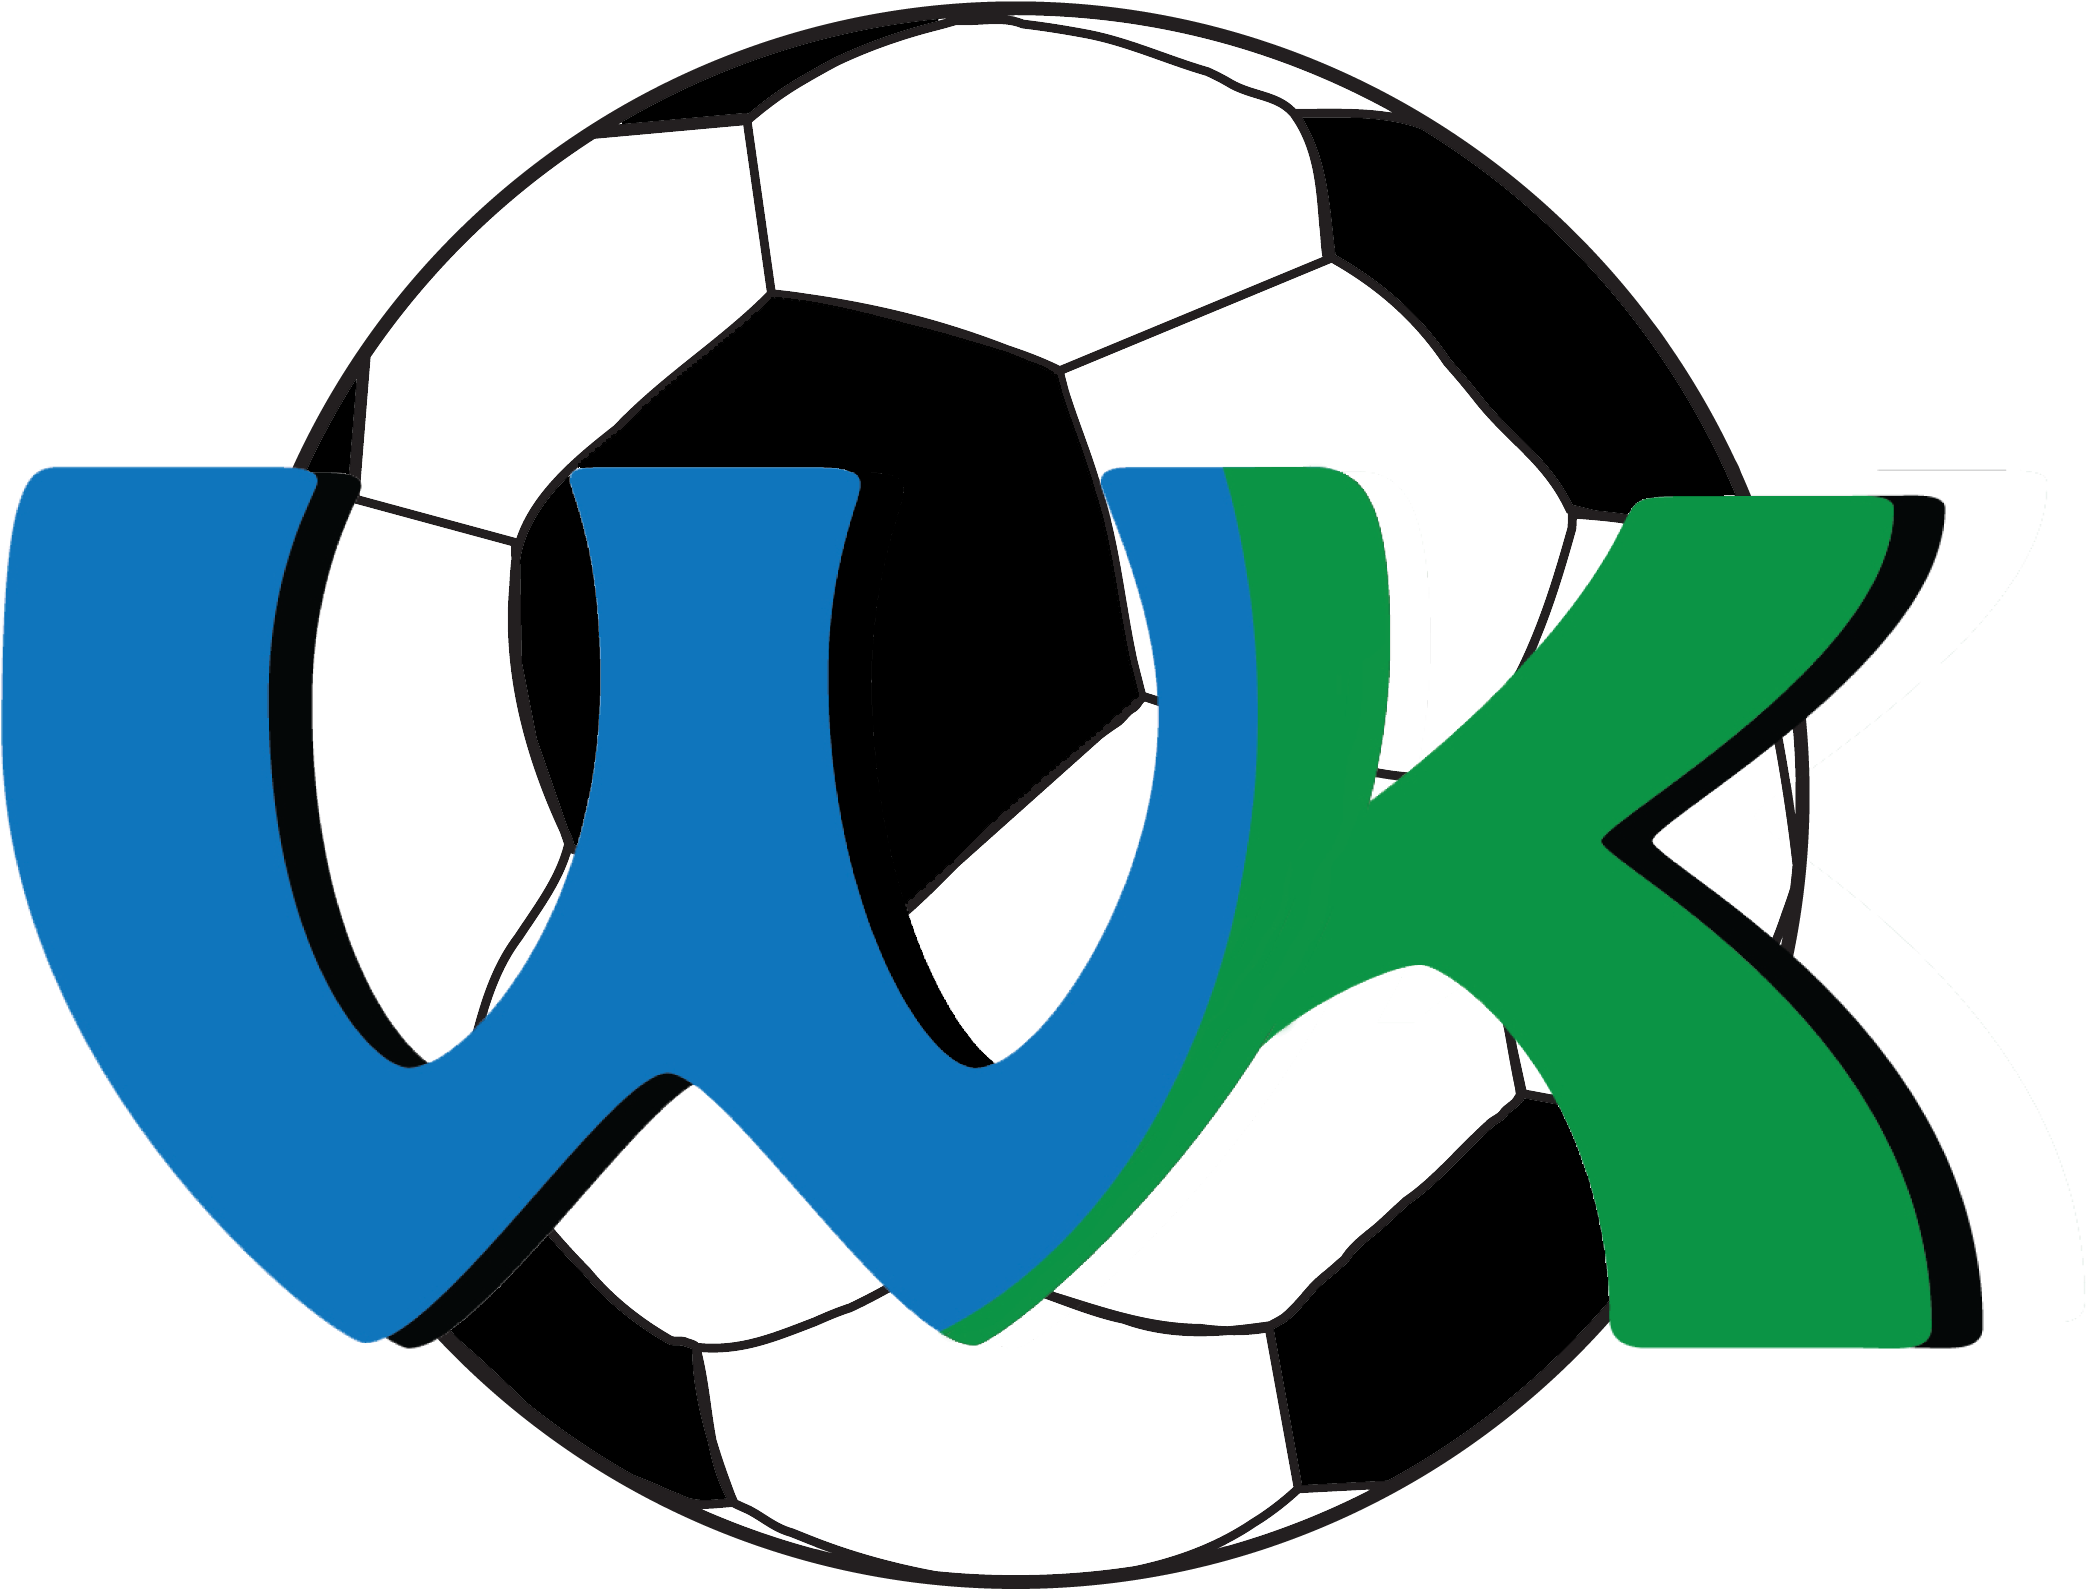 Weikem Soccer Camp - Football (2282x1710)